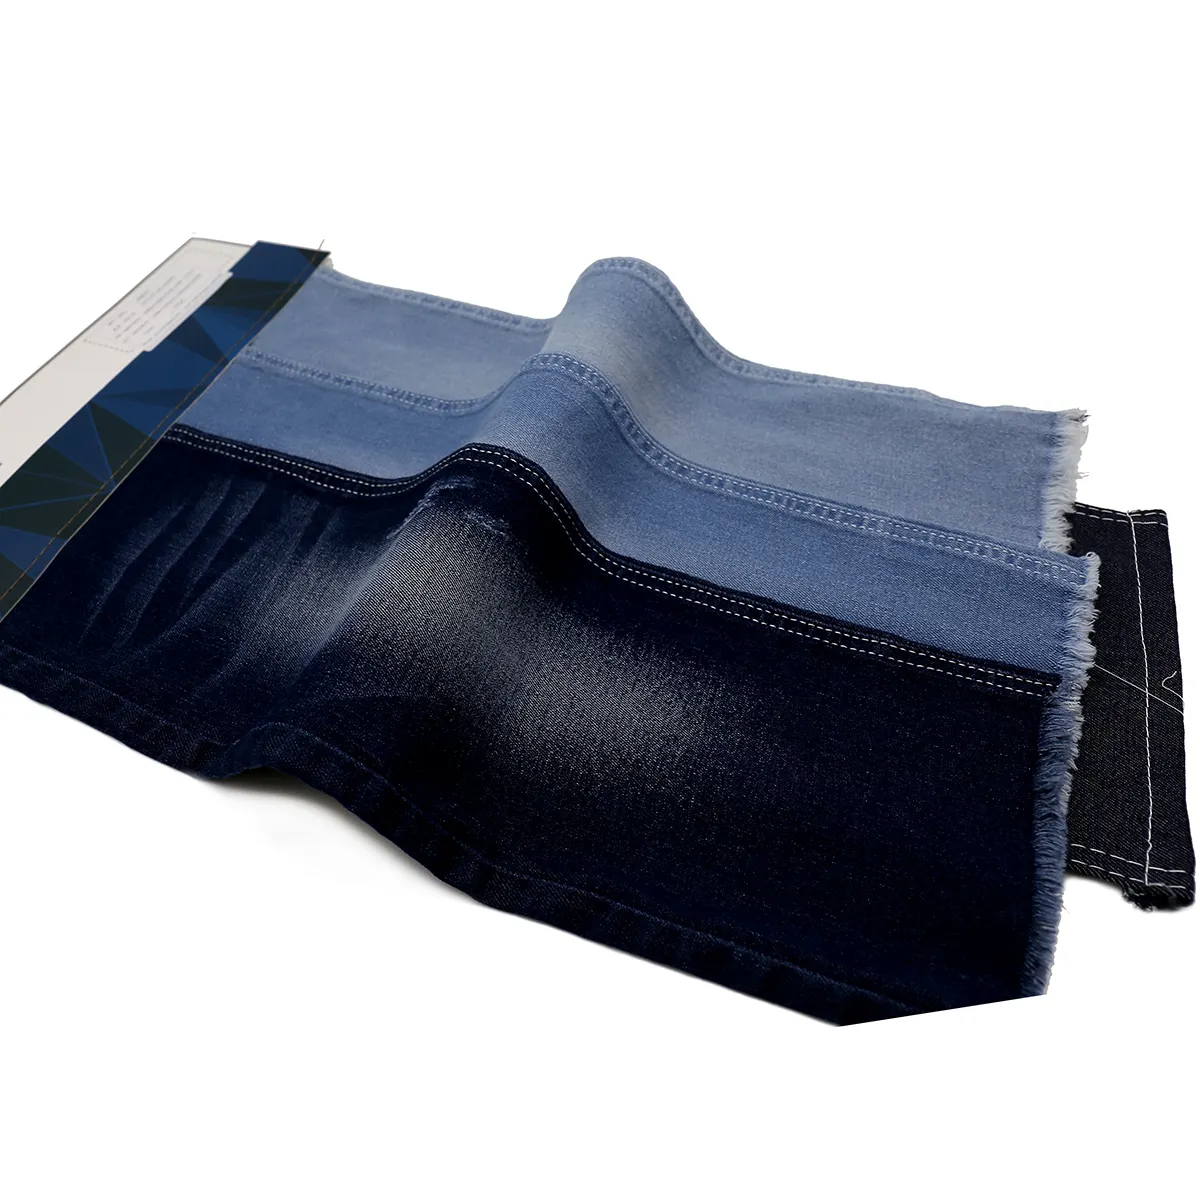 Bonne qualité 11.5 oz Indigo Jeans Denim tissu usine vente chaude avec un bon prix